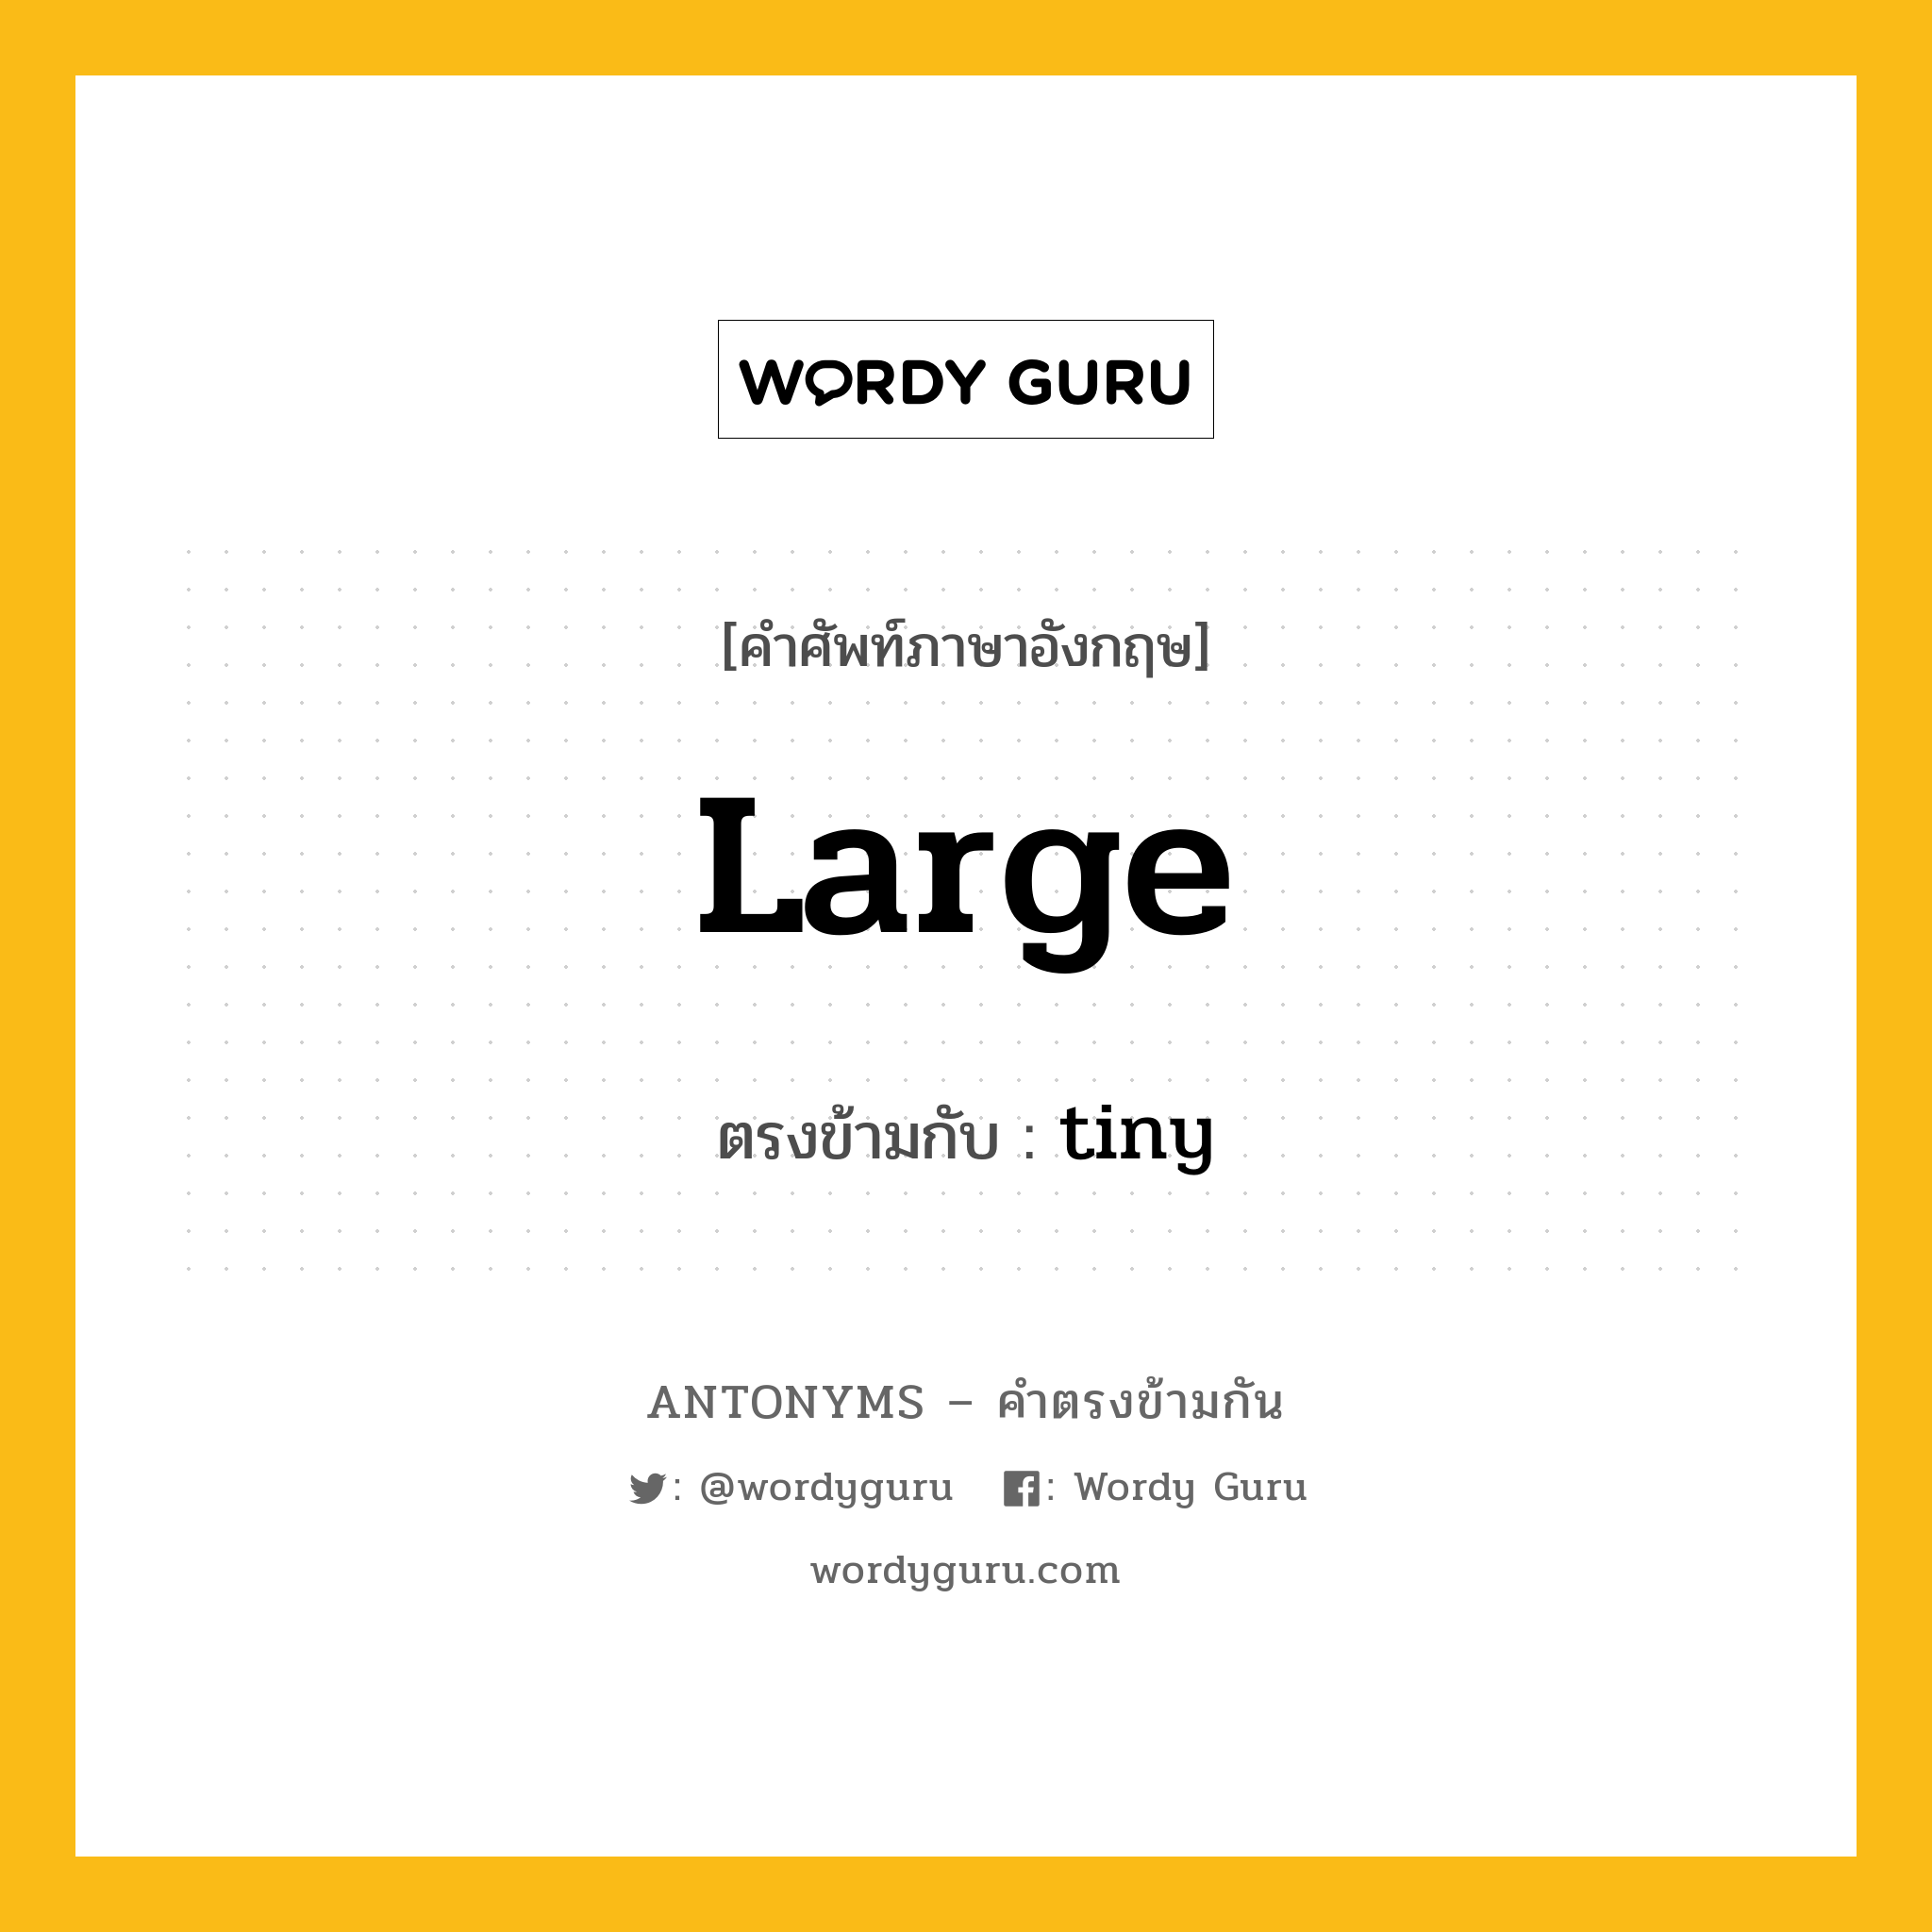 large เป็นคำตรงข้ามกับคำไหนบ้าง?, คำศัพท์ภาษาอังกฤษที่มีความหมายตรงข้ามกัน large ตรงข้ามกับ tiny หมวด tiny